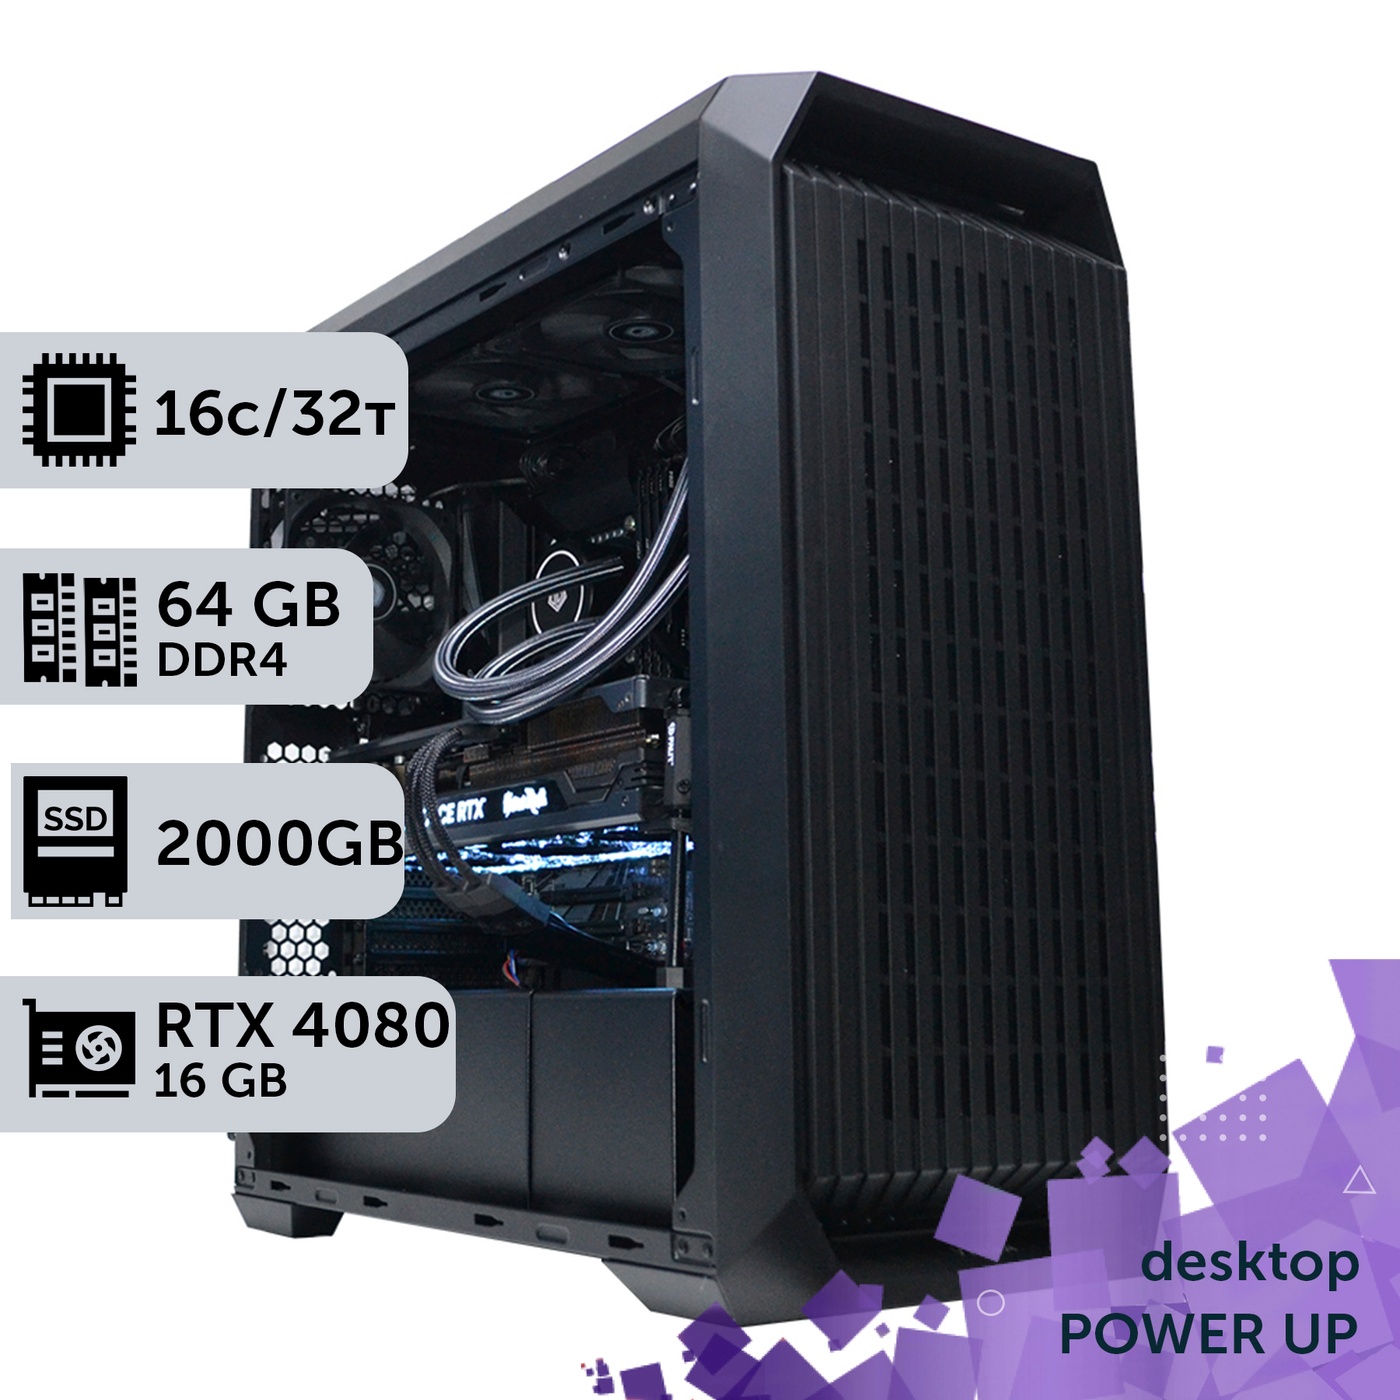 Робоча станція PowerUp Desktop #205 Ryzen 9 5950x/64 GB/HDD 2 TB/SSD 1TB/GeForce RTX 4080 16GB